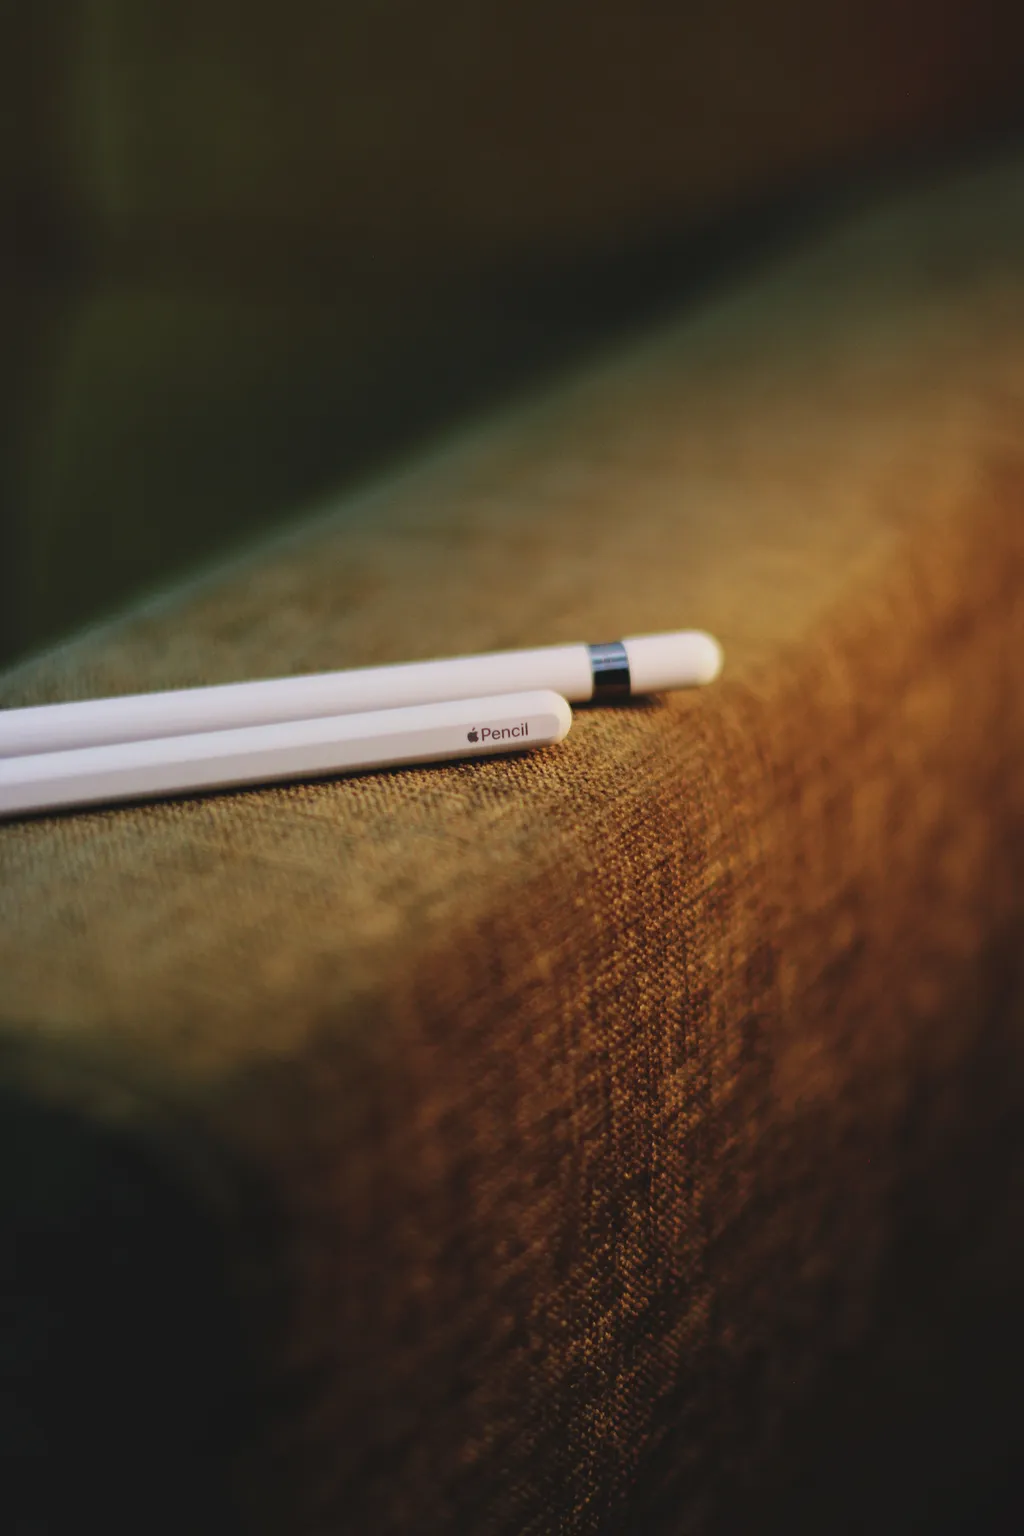 Modelos mais avançados, como a Apple Pencil, possuem recursos que demandam energia interna (Imagem: Mukul Joshi/Unsplash)